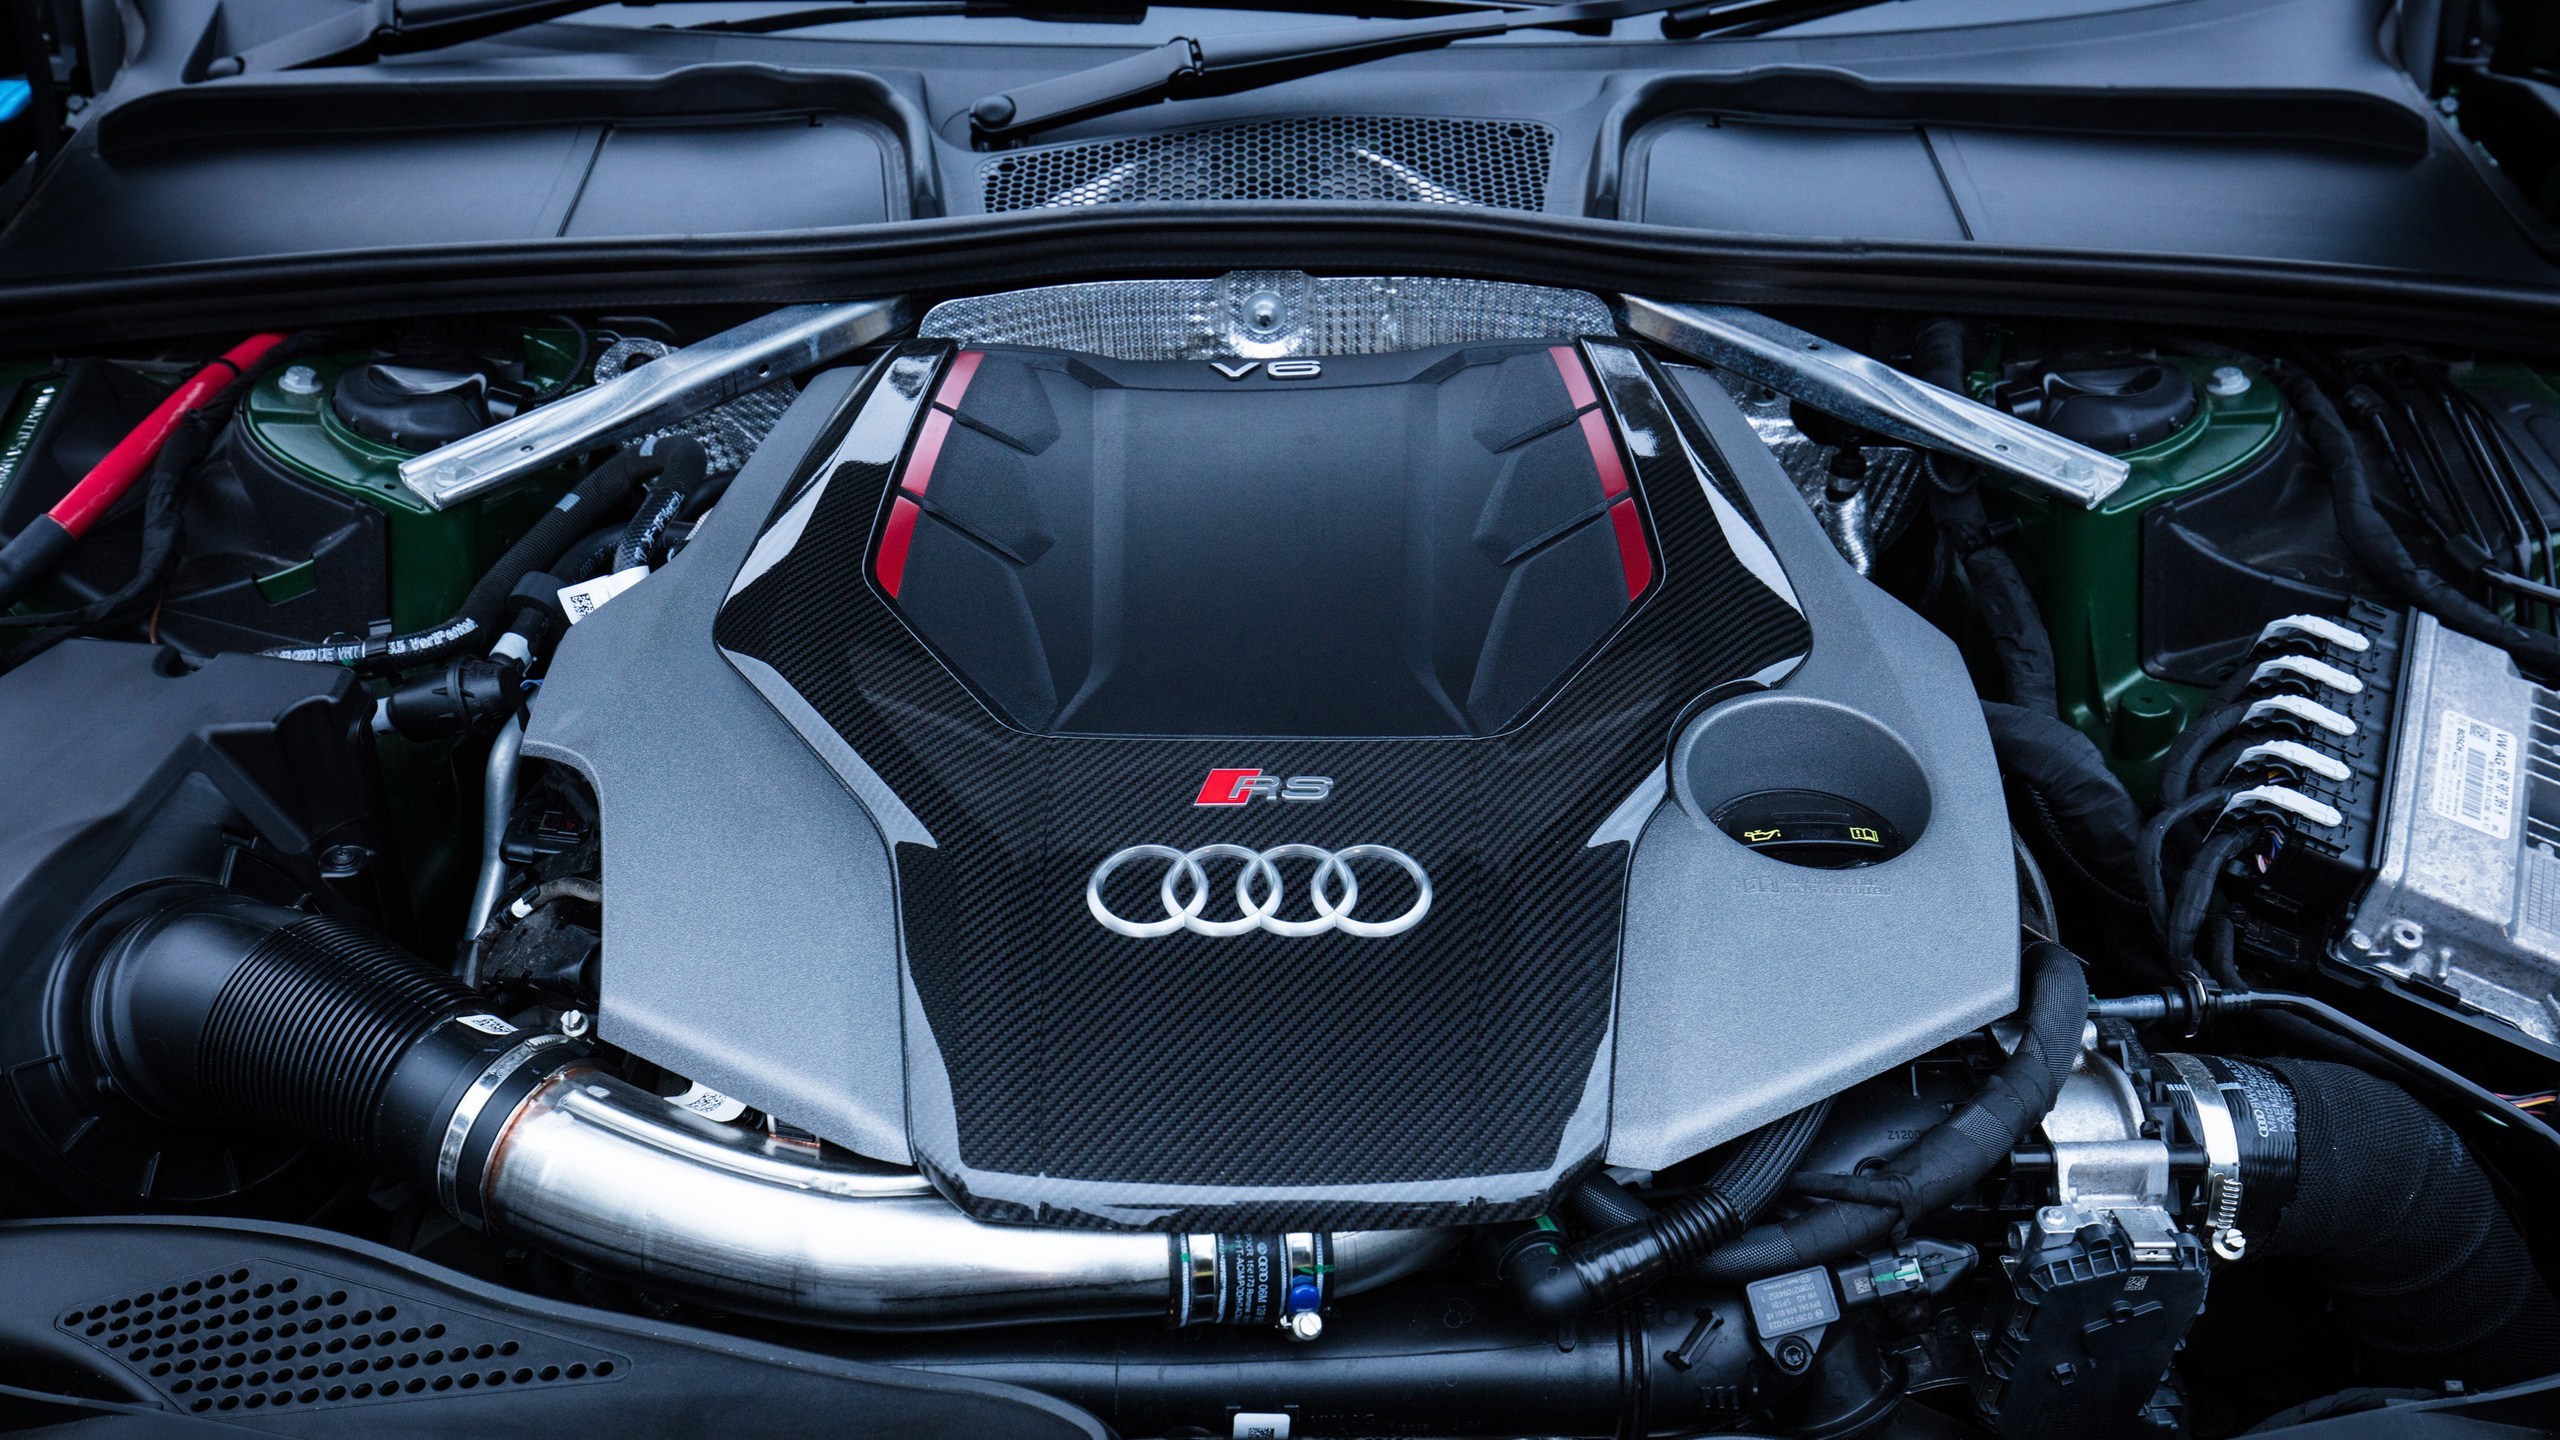 Động cơ Audi: Muốn tìm hiểu về động cơ Audi, hãy cùng nhau khám phá sức mạnh ấn tượng và công nghệ tiên tiến từ hãng xe danh tiếng tới từ Đức!